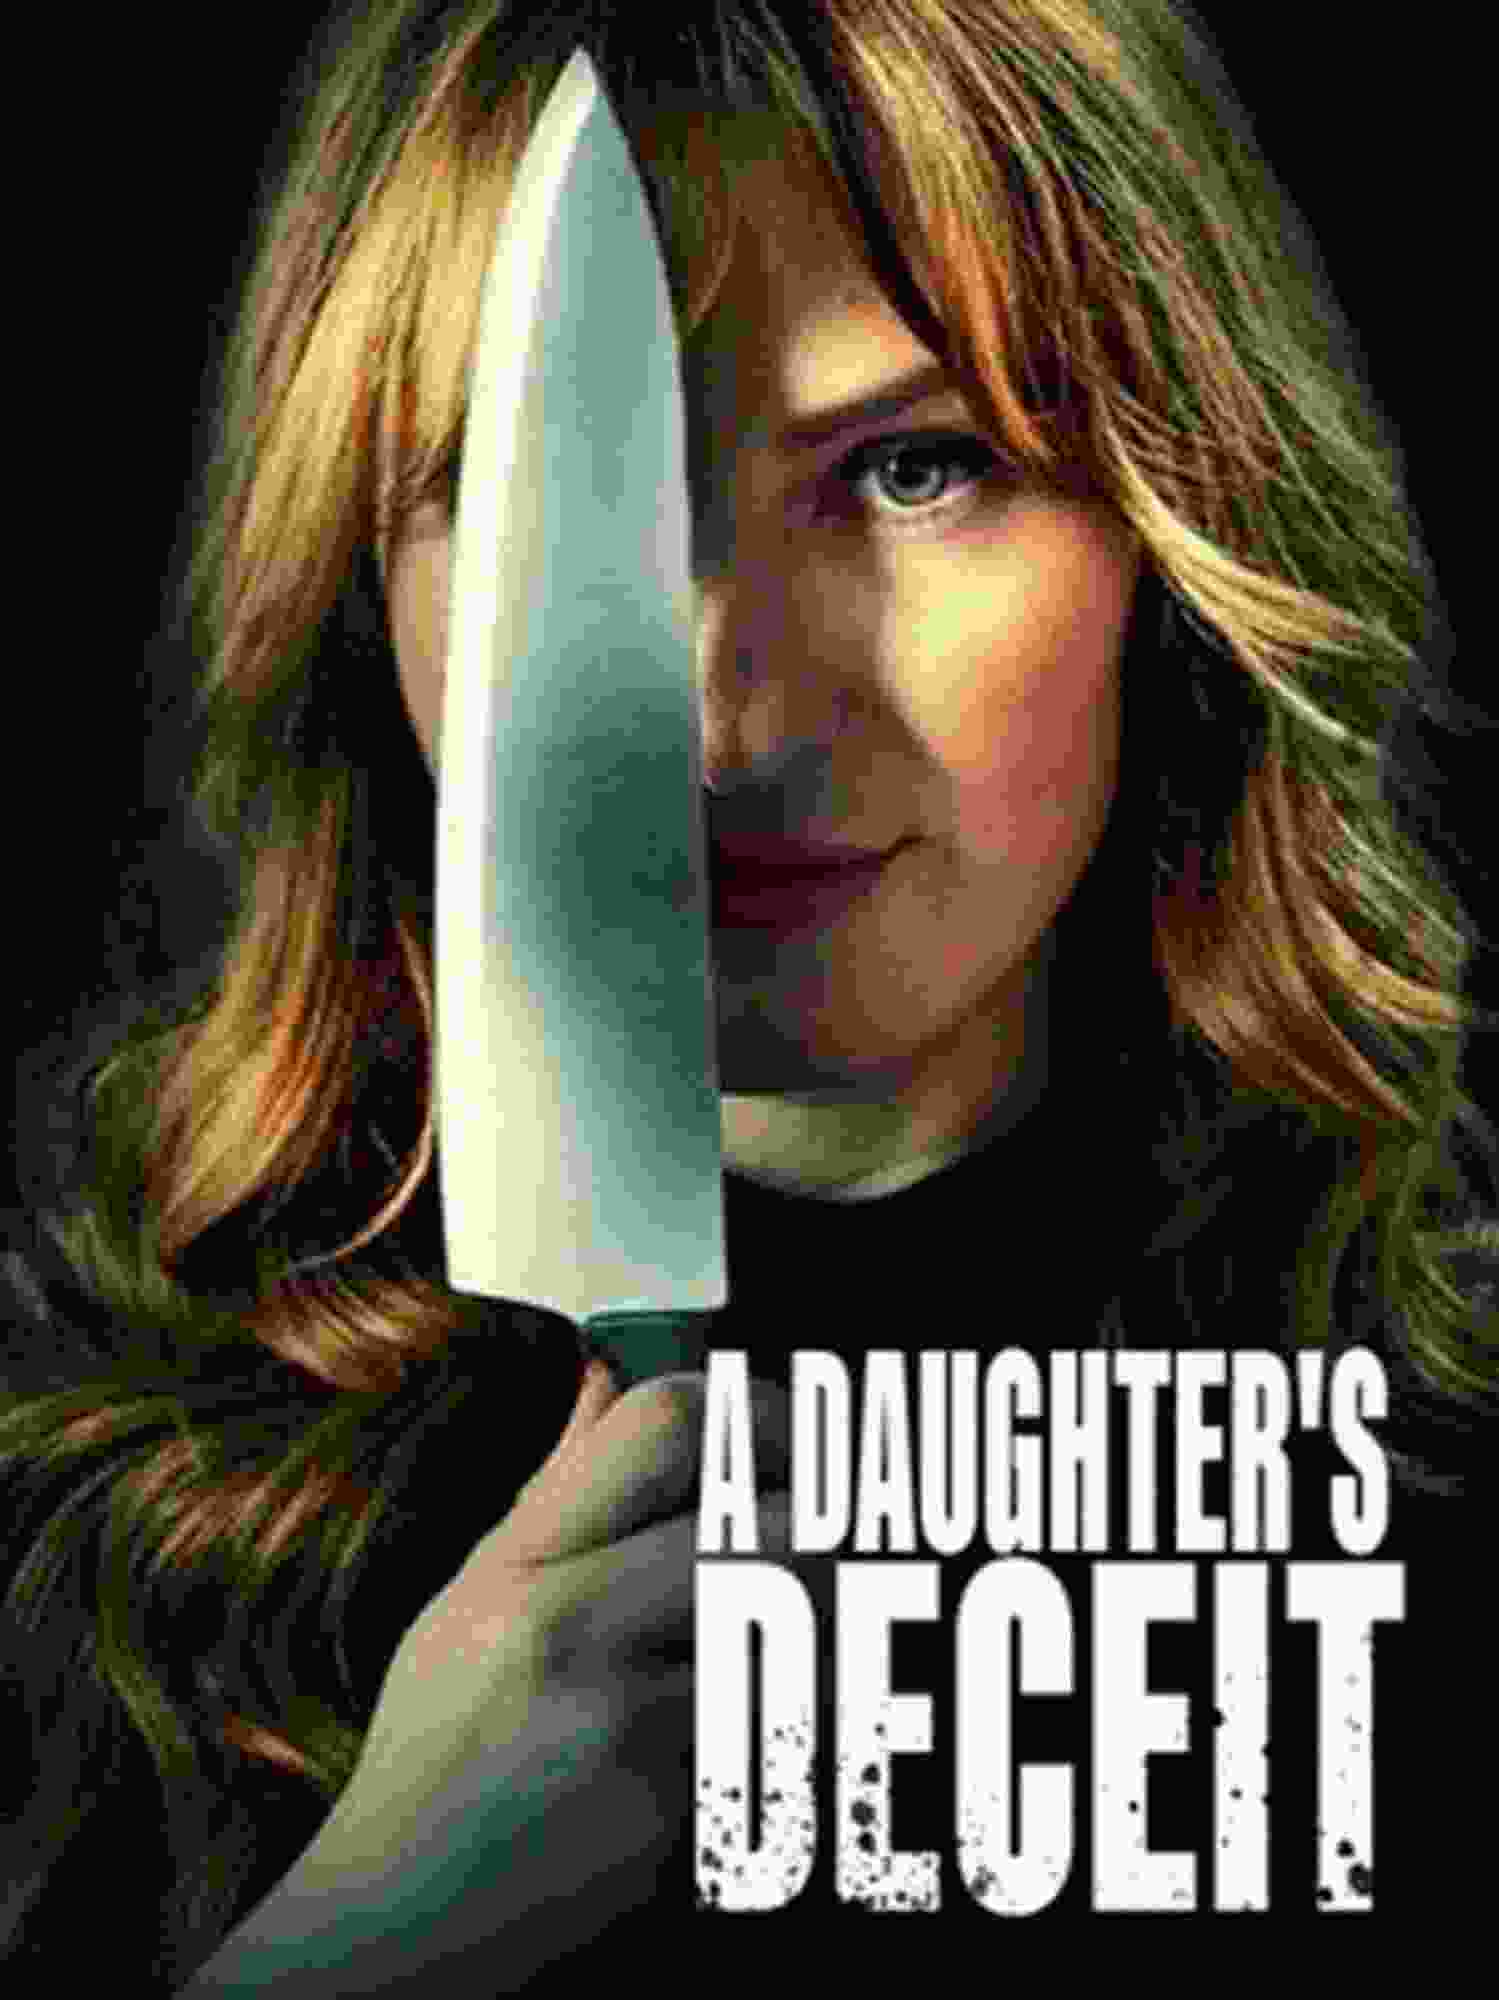 A Daughter's Deceit (2021) Jennifer Field